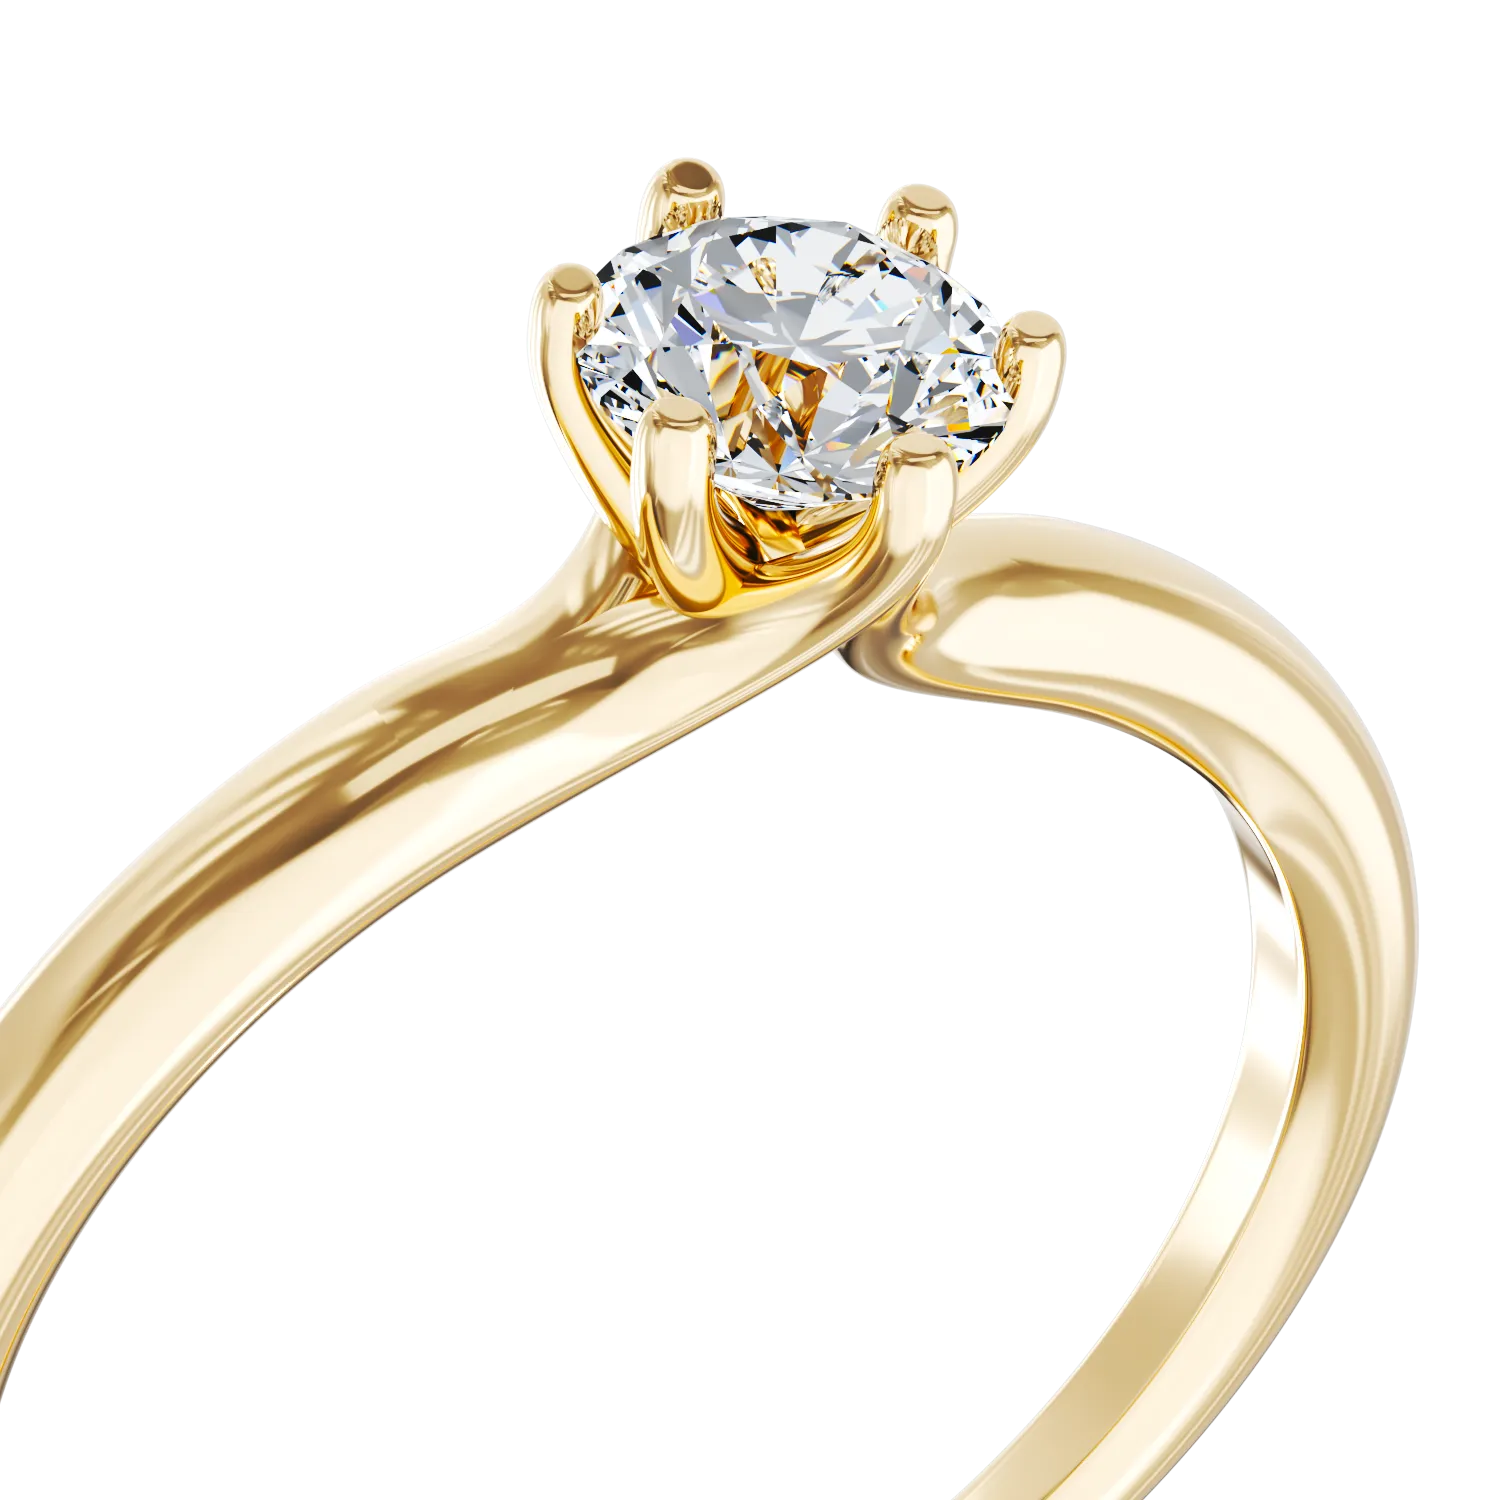 Eljegyzési gyűrű 18K-os sárga aranyból 0,31ct gyémánttal. Gramm: 2,30